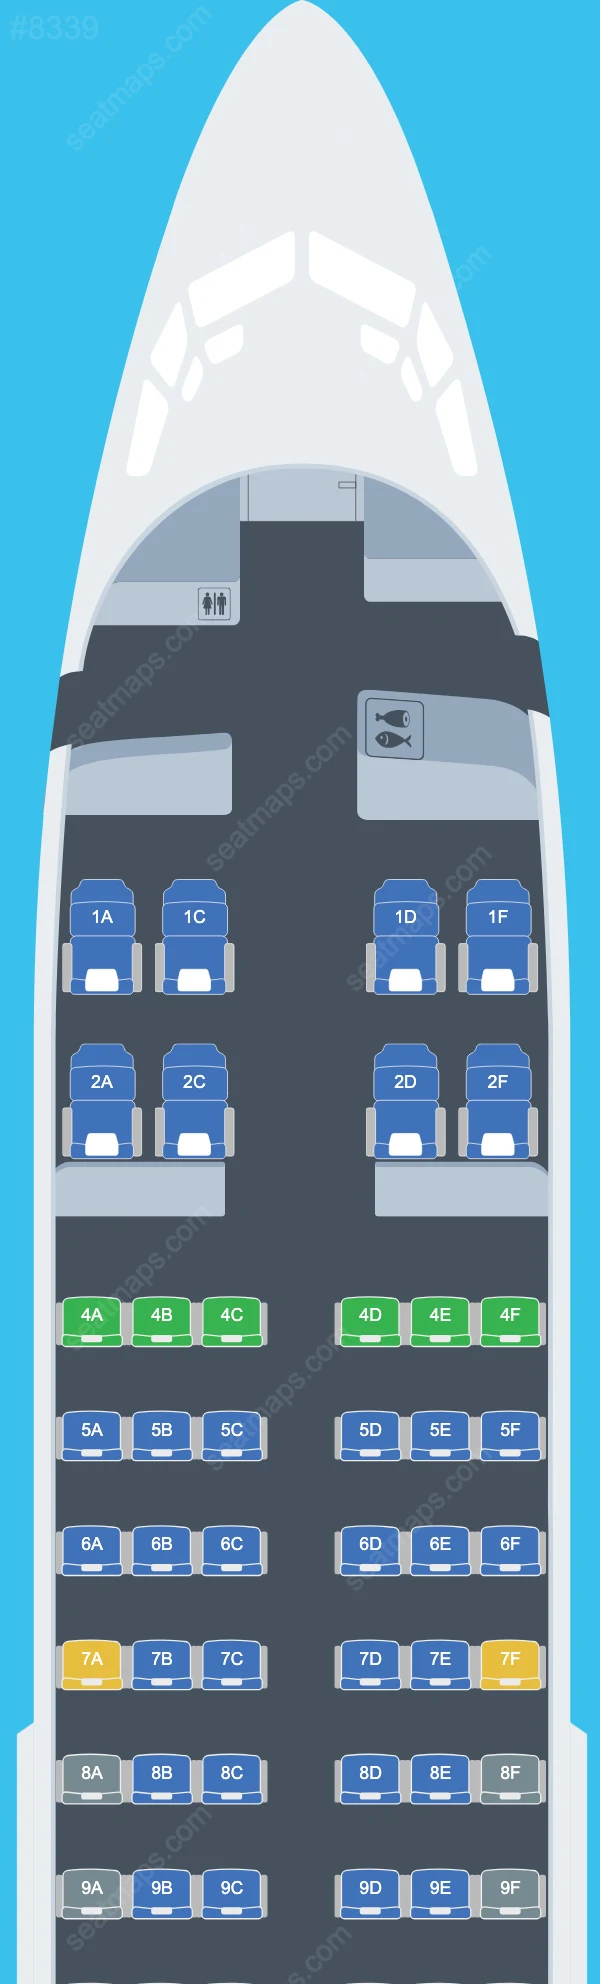 Surinam Airways Boeing 737 Seat Maps 737-700